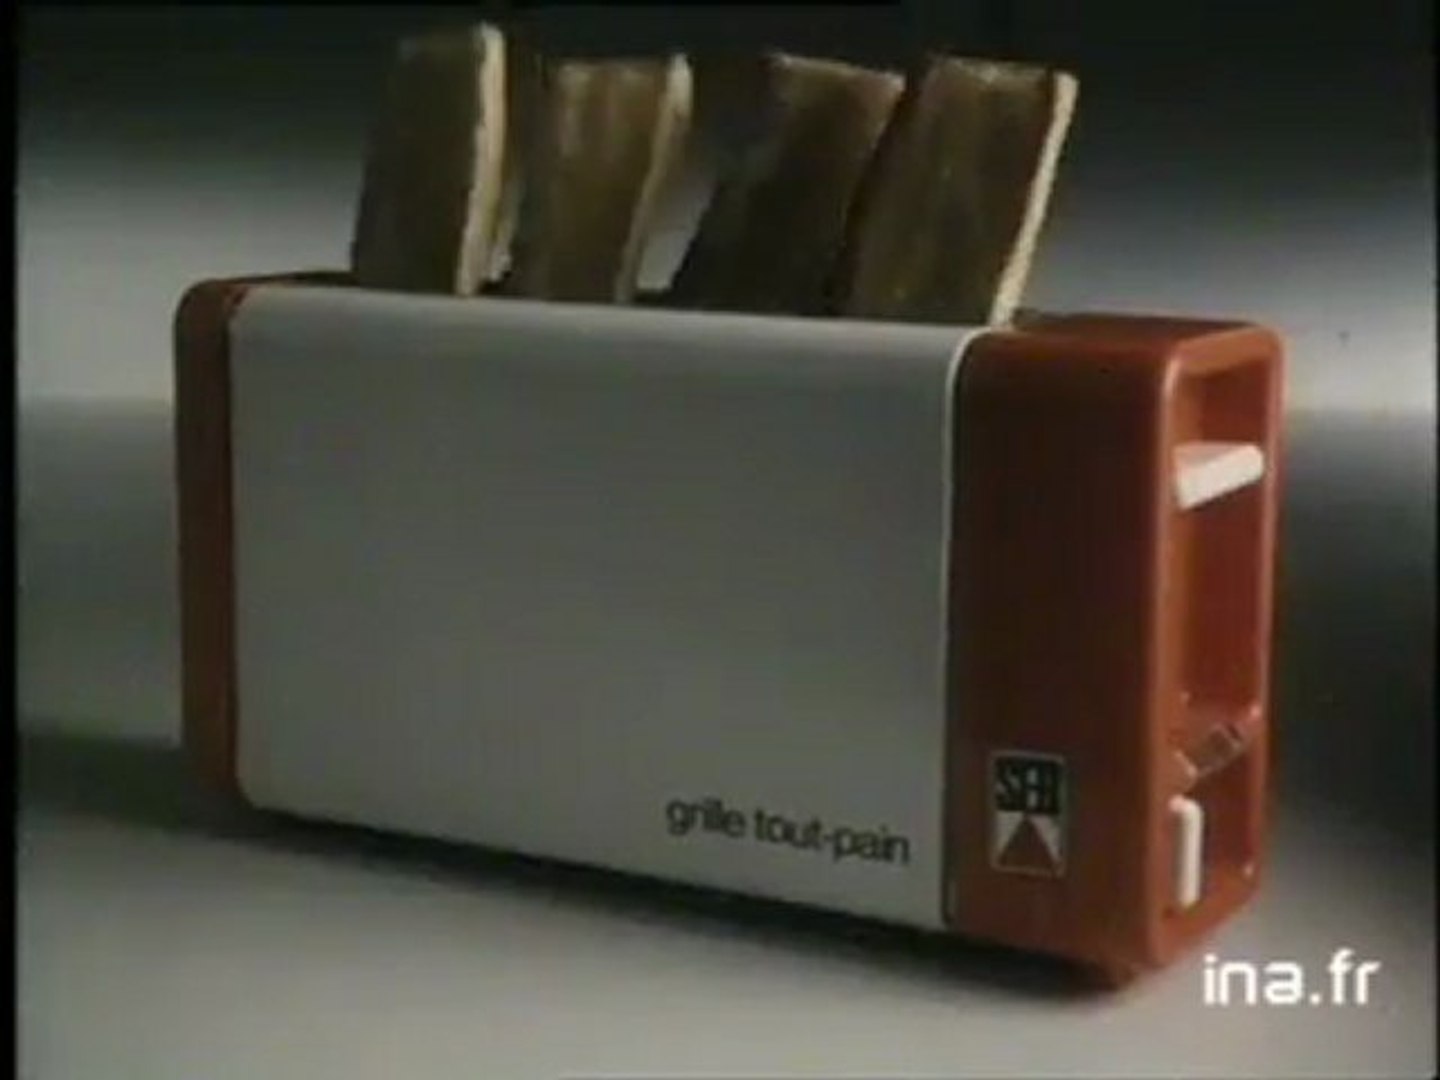 grille-pain seb années 80 - Vidéo Dailymotion